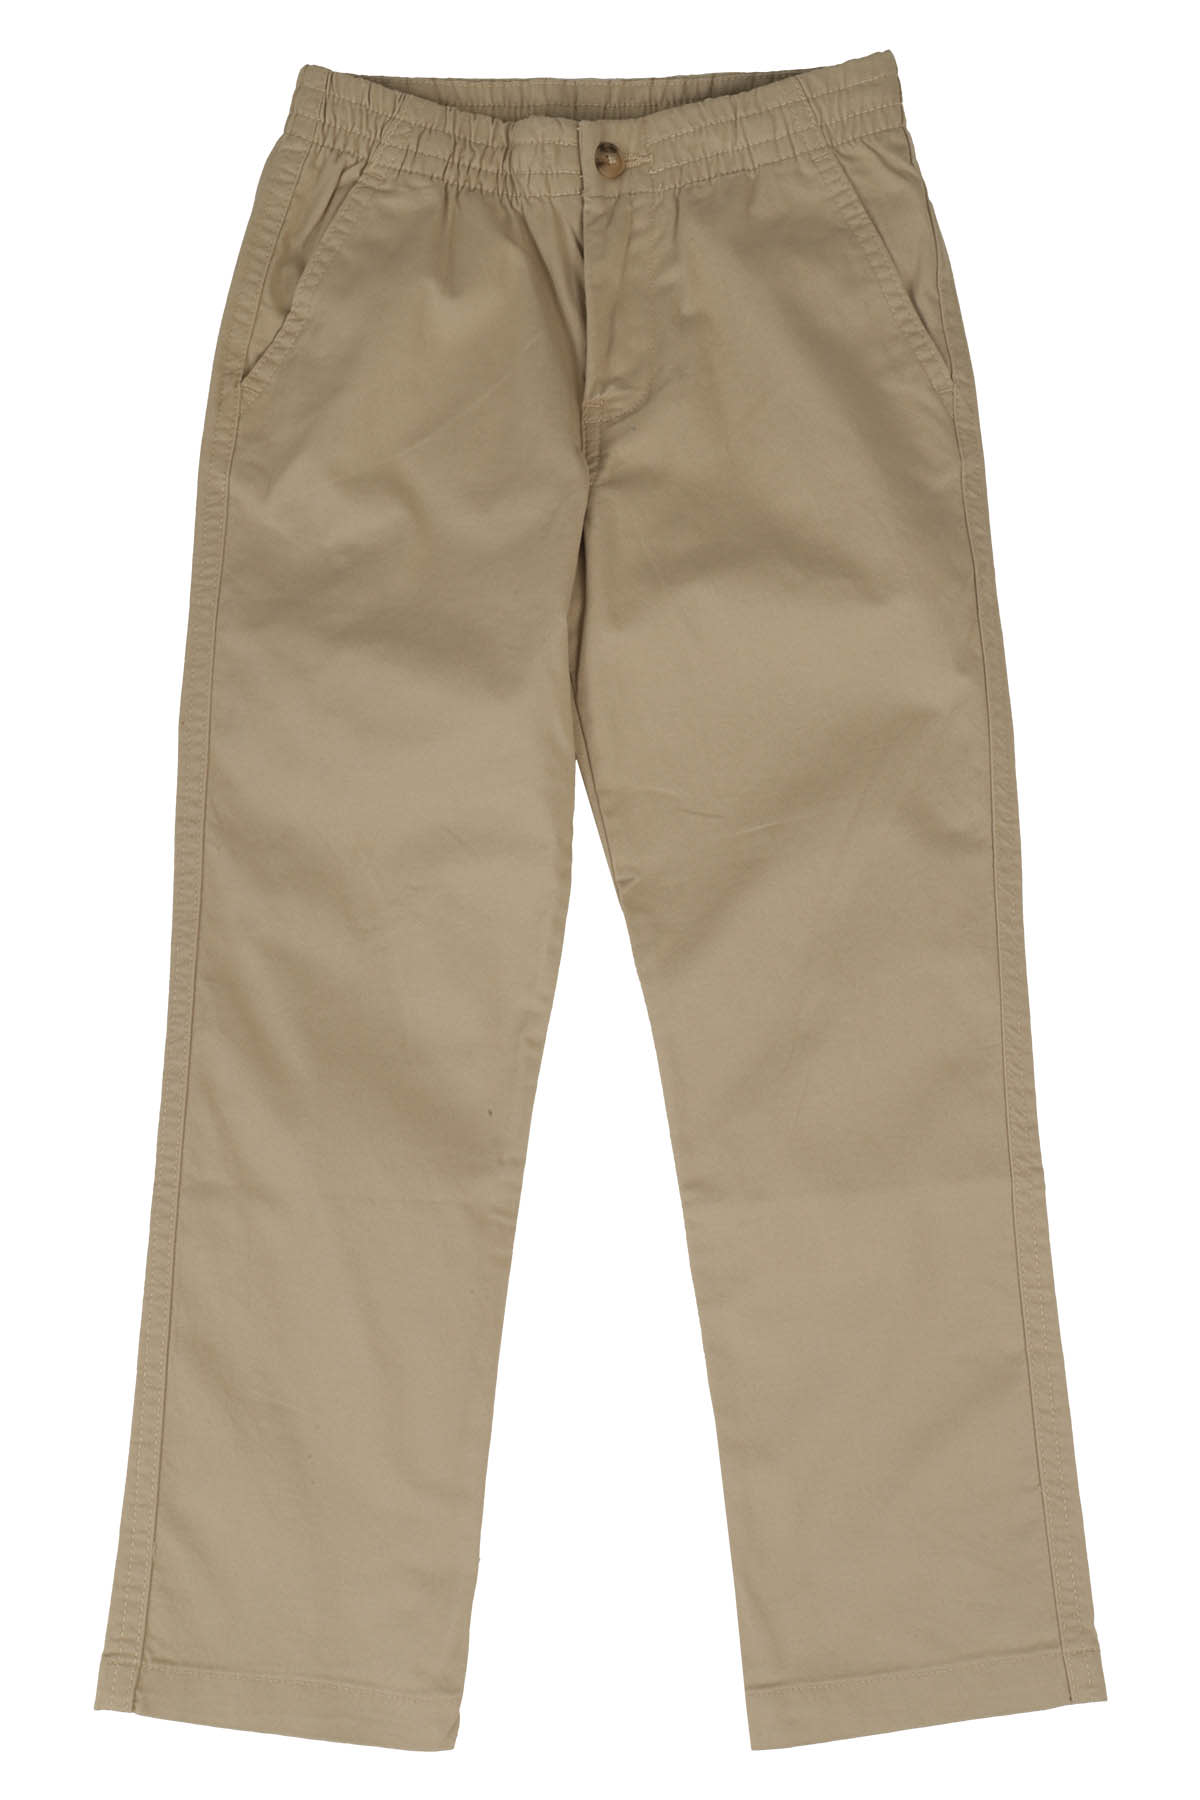 Polo Ralph Lauren Kids' Pantaloni In Khaki